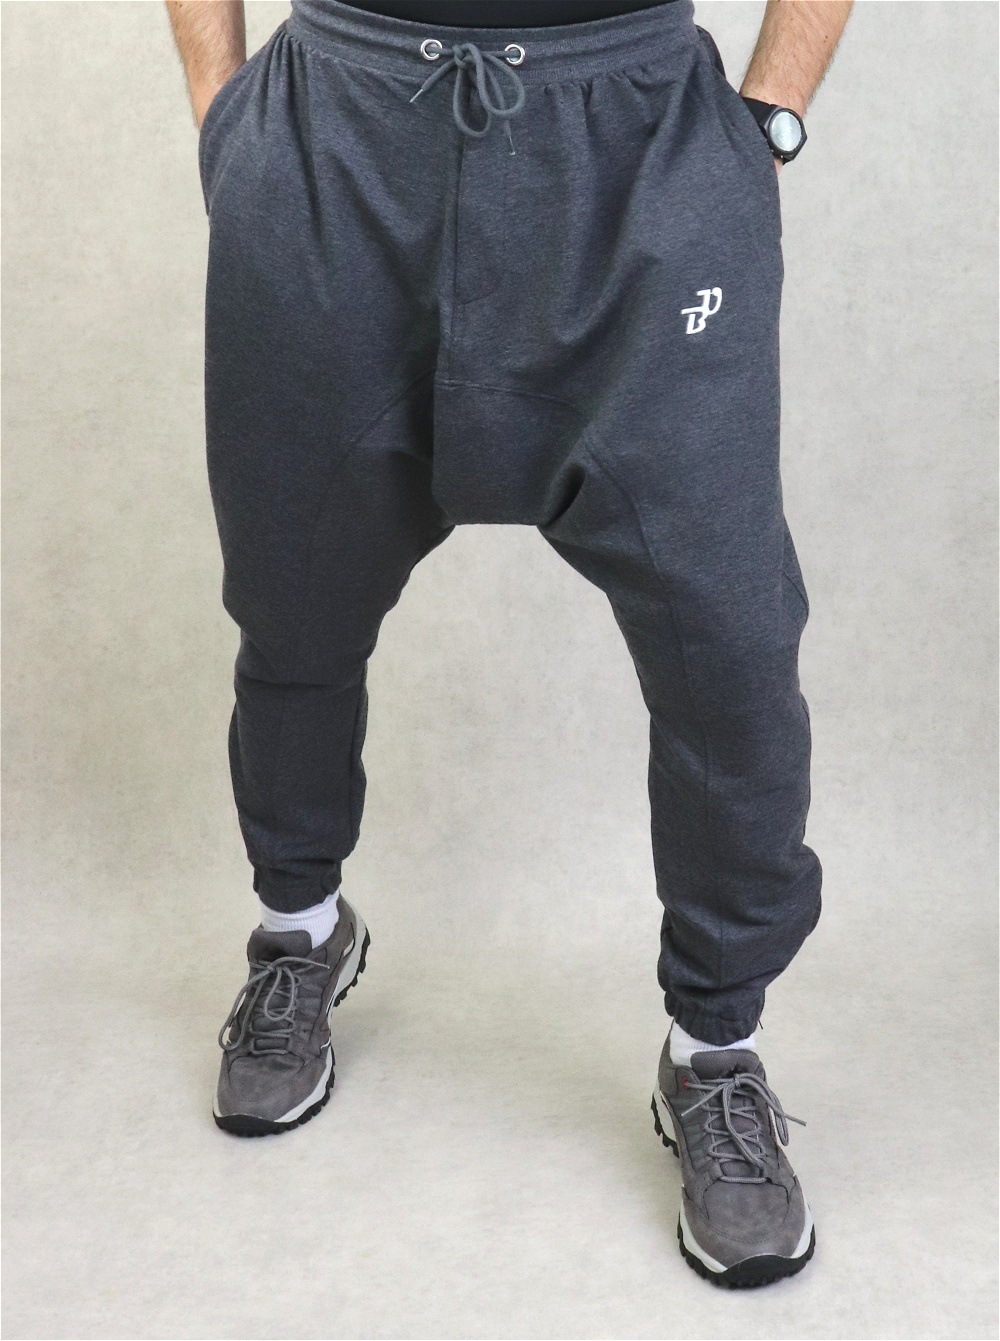 HMIYA Pantalon de Jogging Homme Coton de Relaxation Pantalons de Sport Training Survêtement avec Poches 